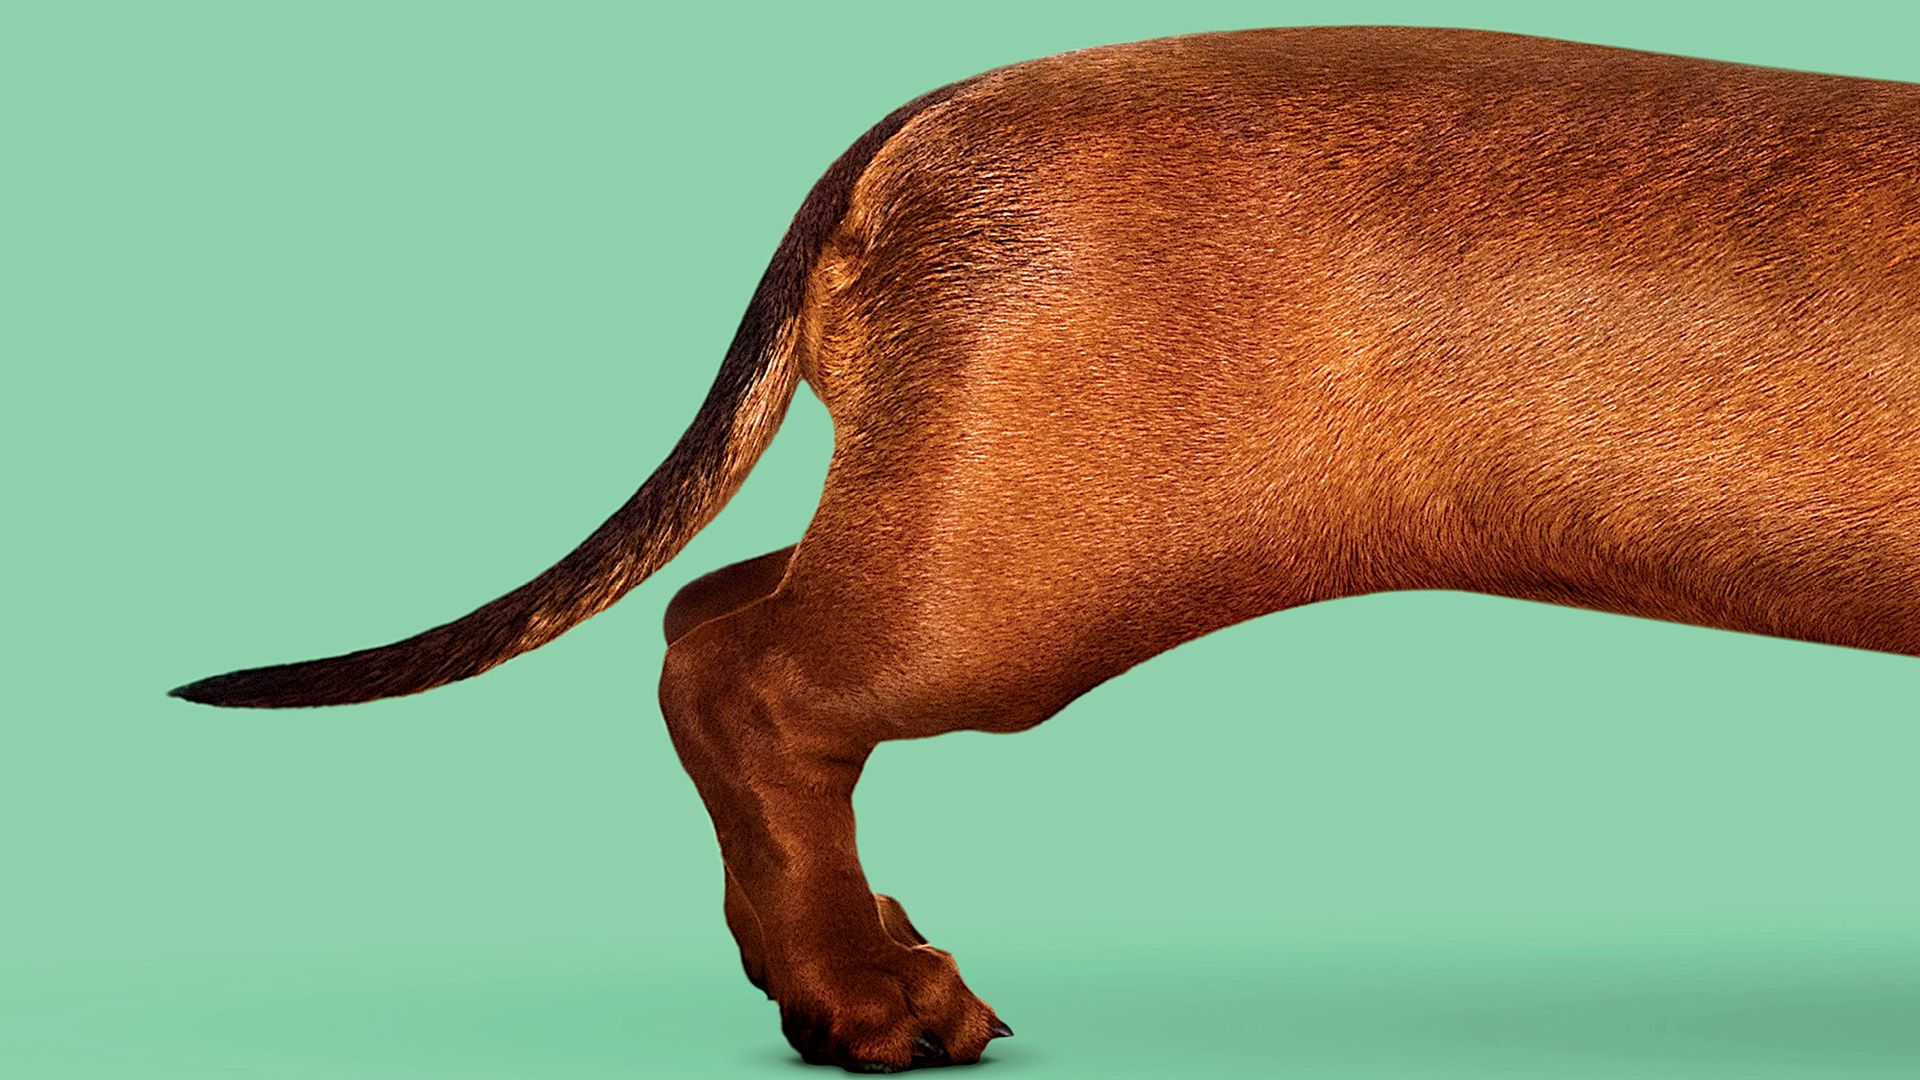 Wiener-Dog background